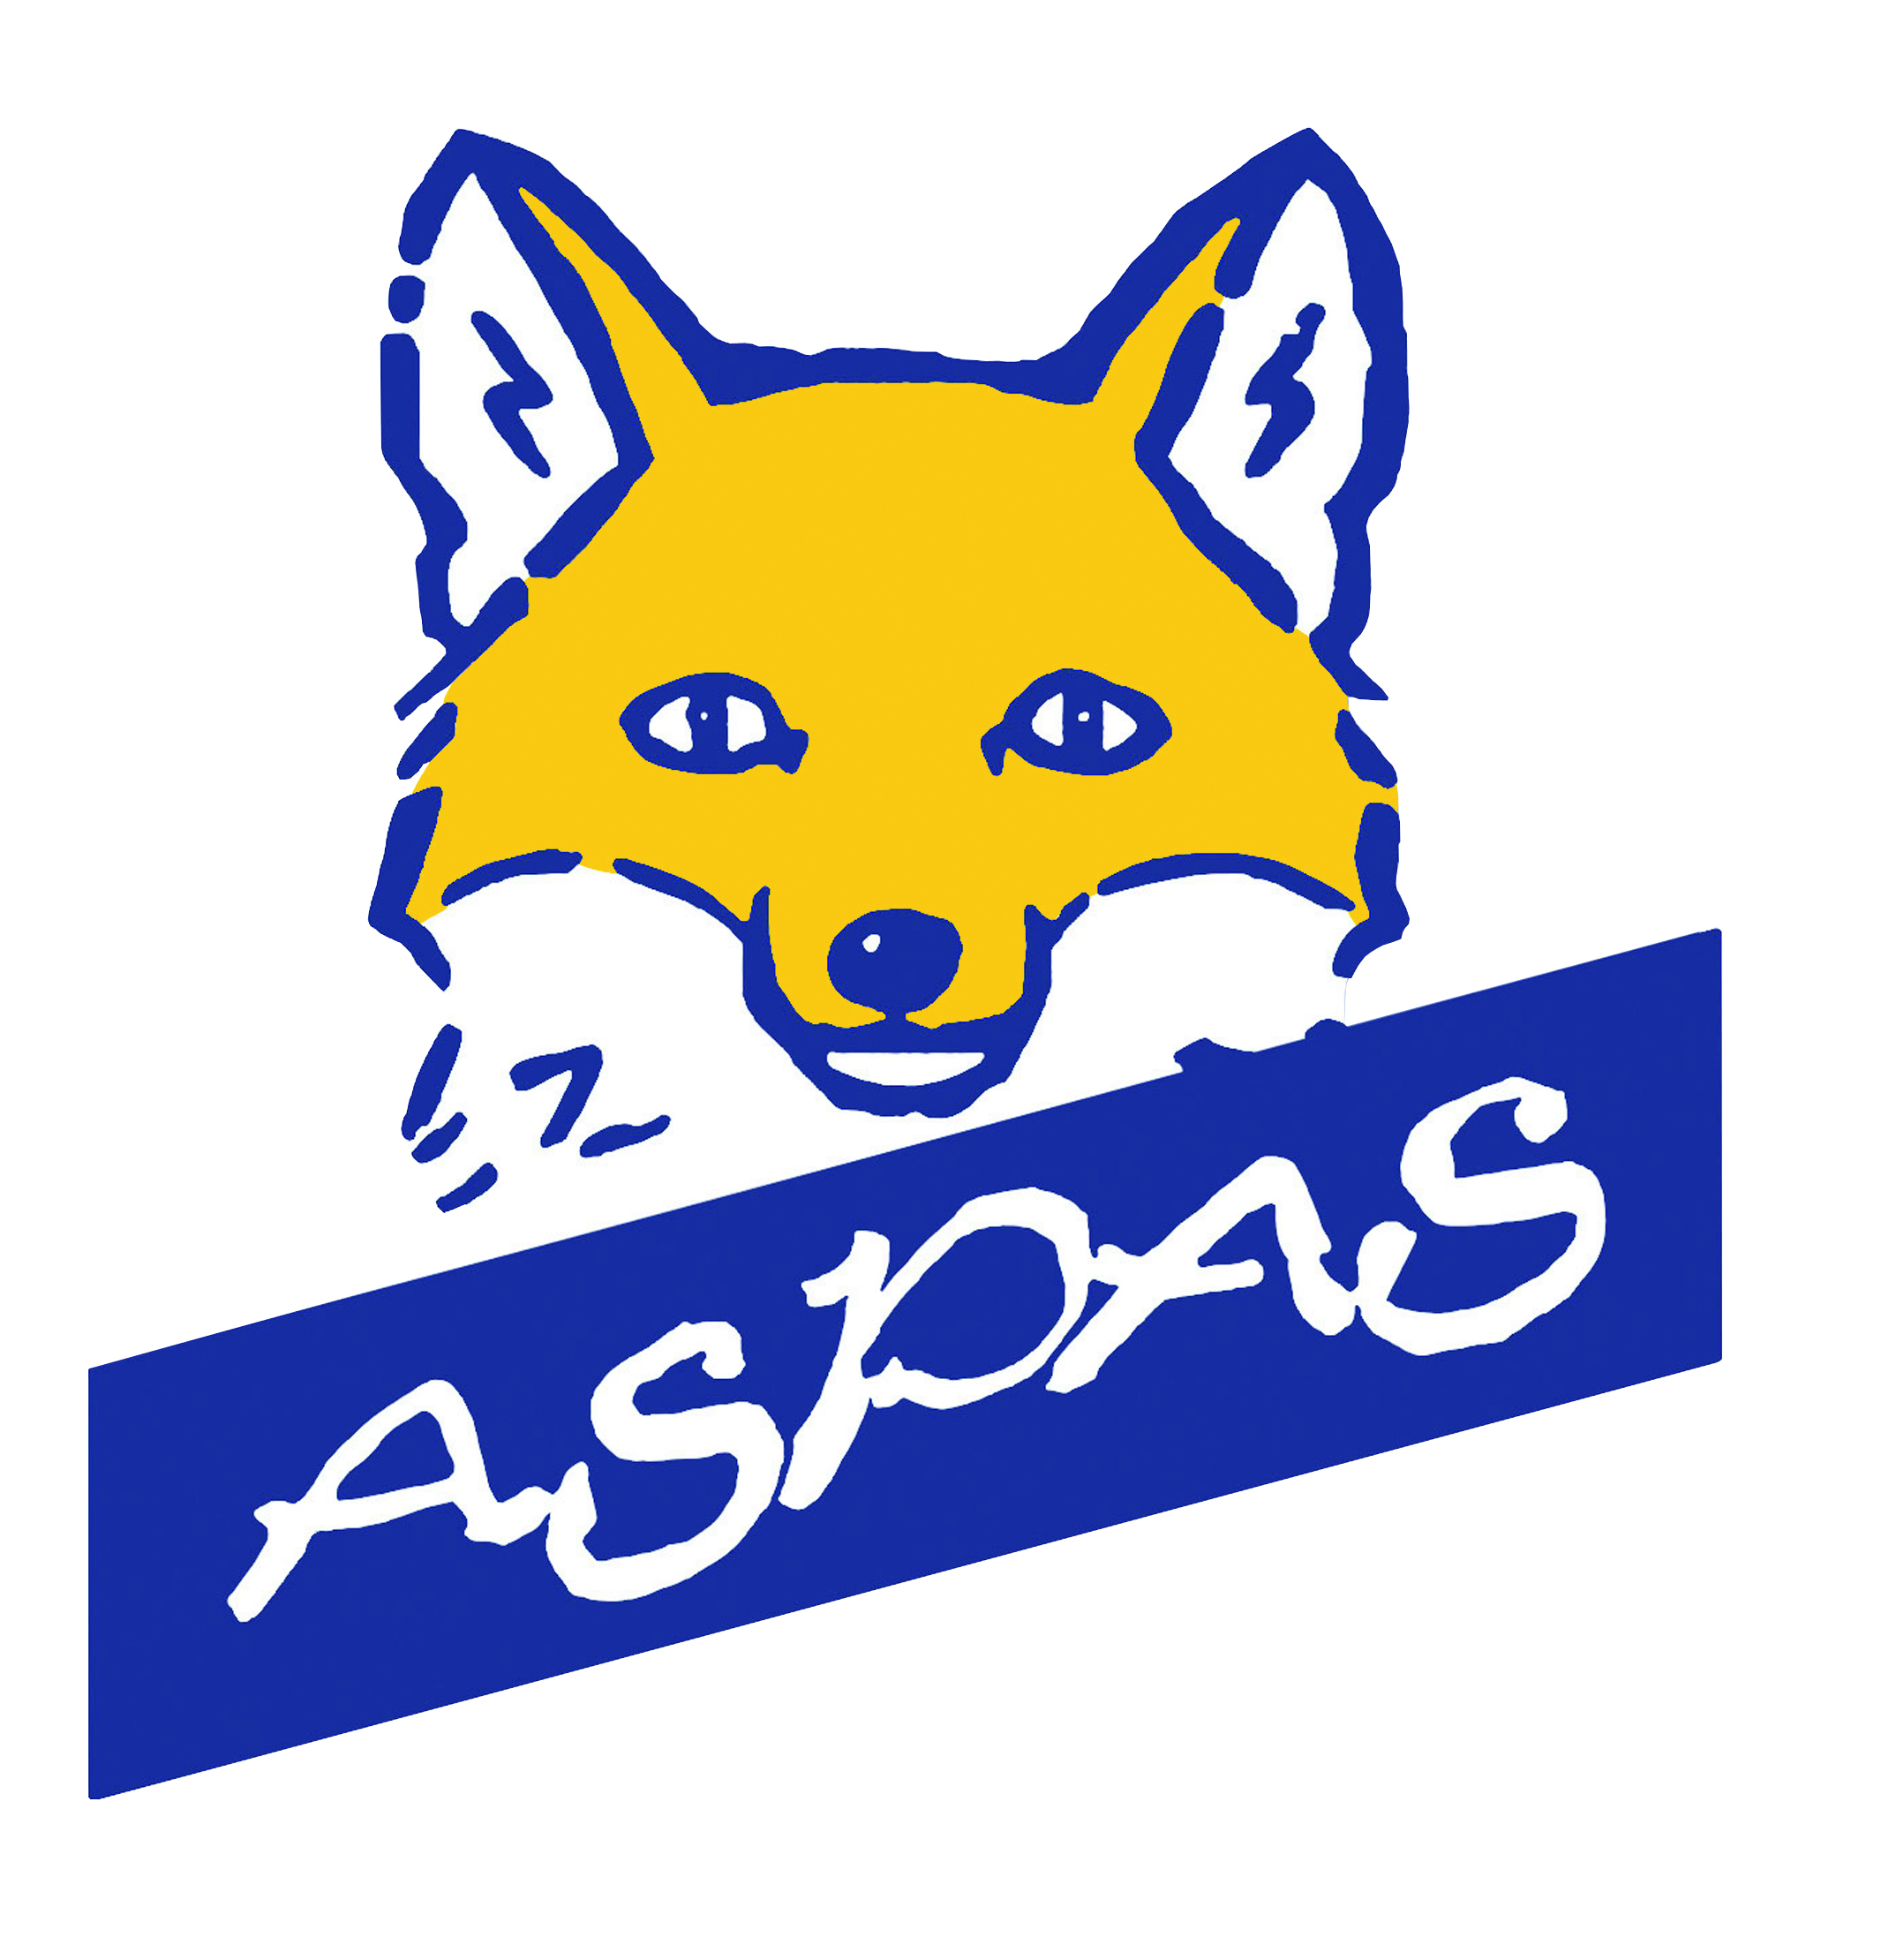 ASPAS : Association pour la Protection des Animaux Sauvages